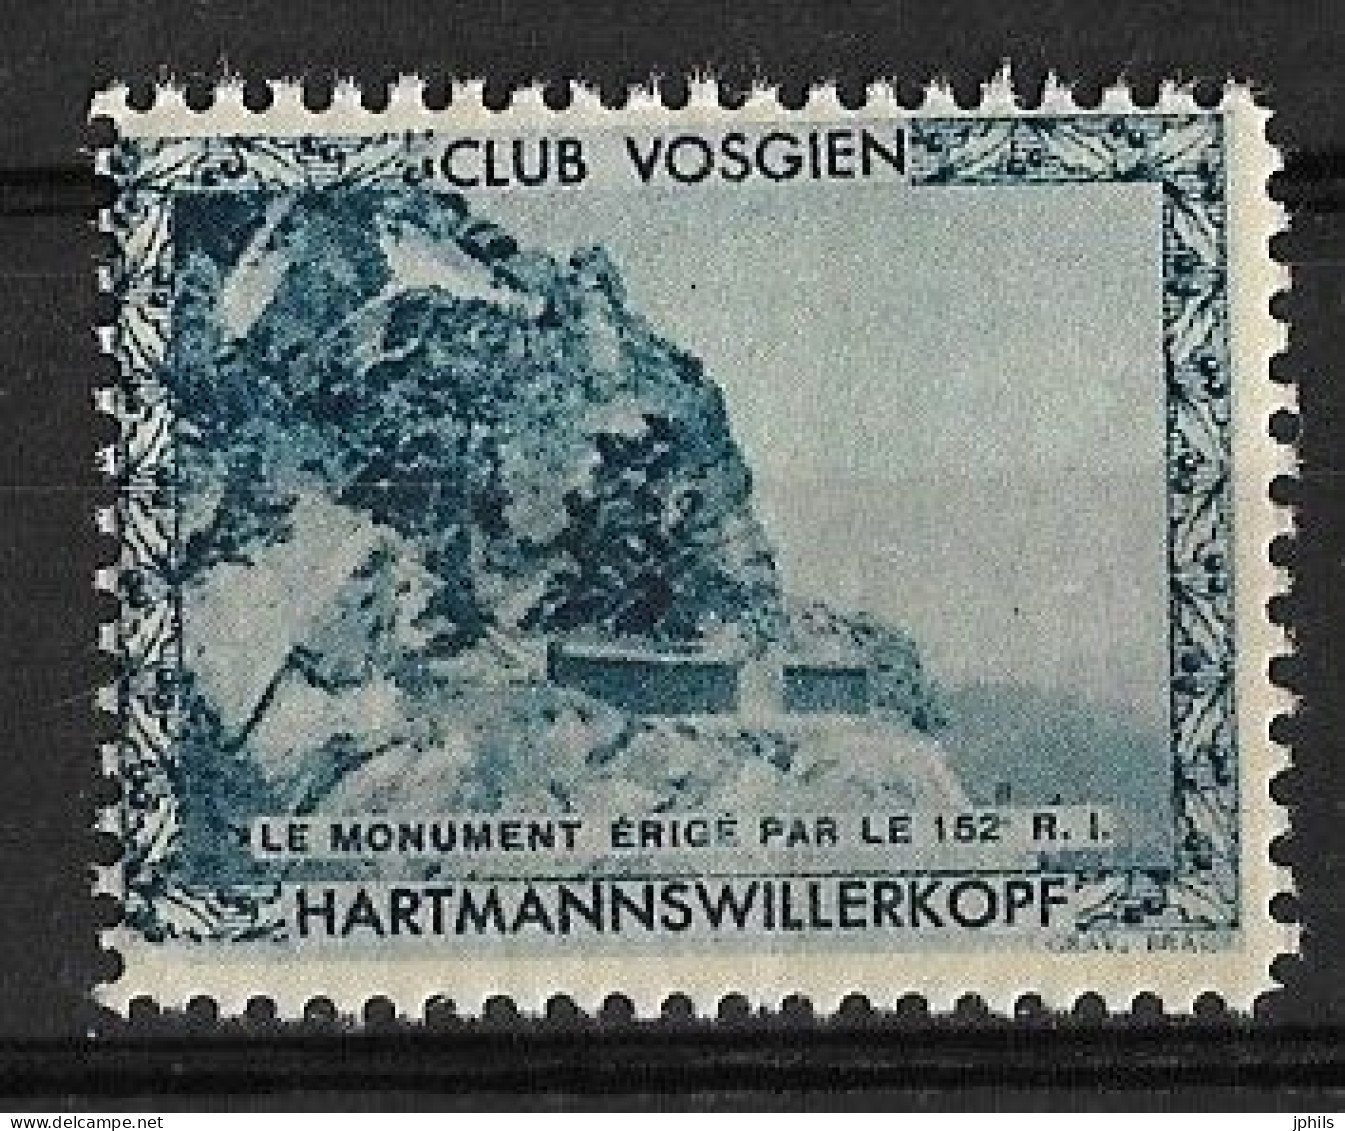 CLUB VOSGIEN HARTMANNSWILLERKOPF ** MONUMENT ERIGE PAR LE 152e R.I - Tourism (Labels)